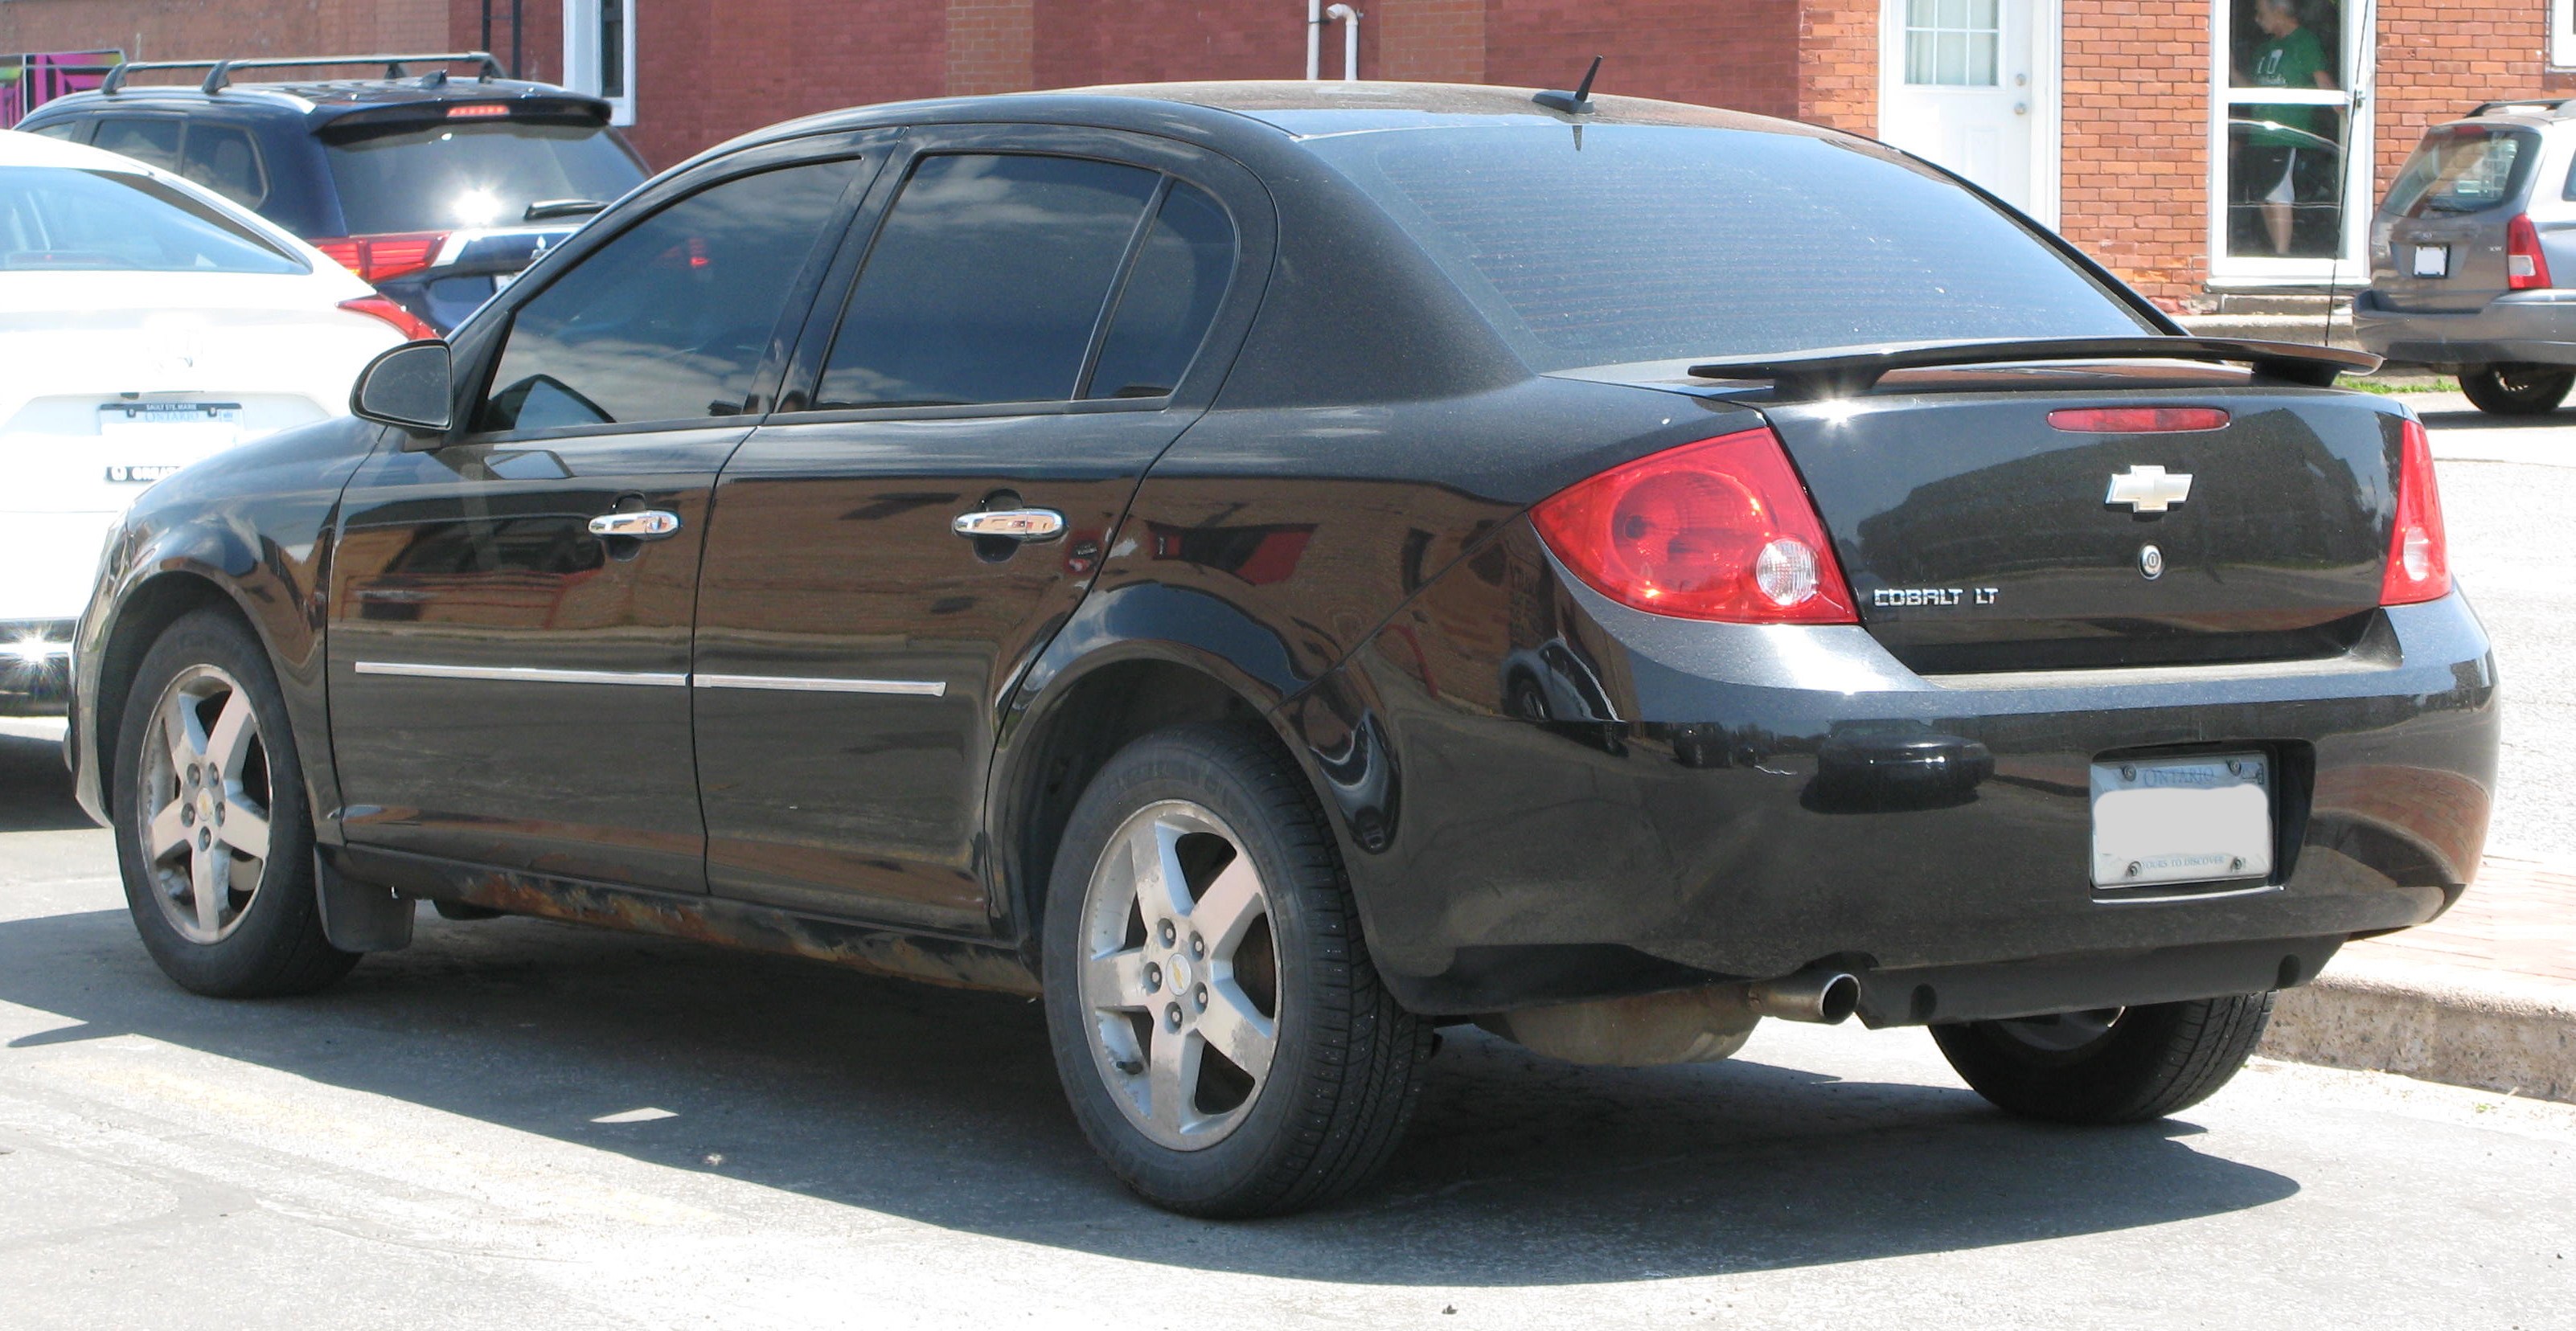 File:2010 Chevrolet Cobalt LT, Rear Left, 05-15-2021.jpg - Wikimedia Commons